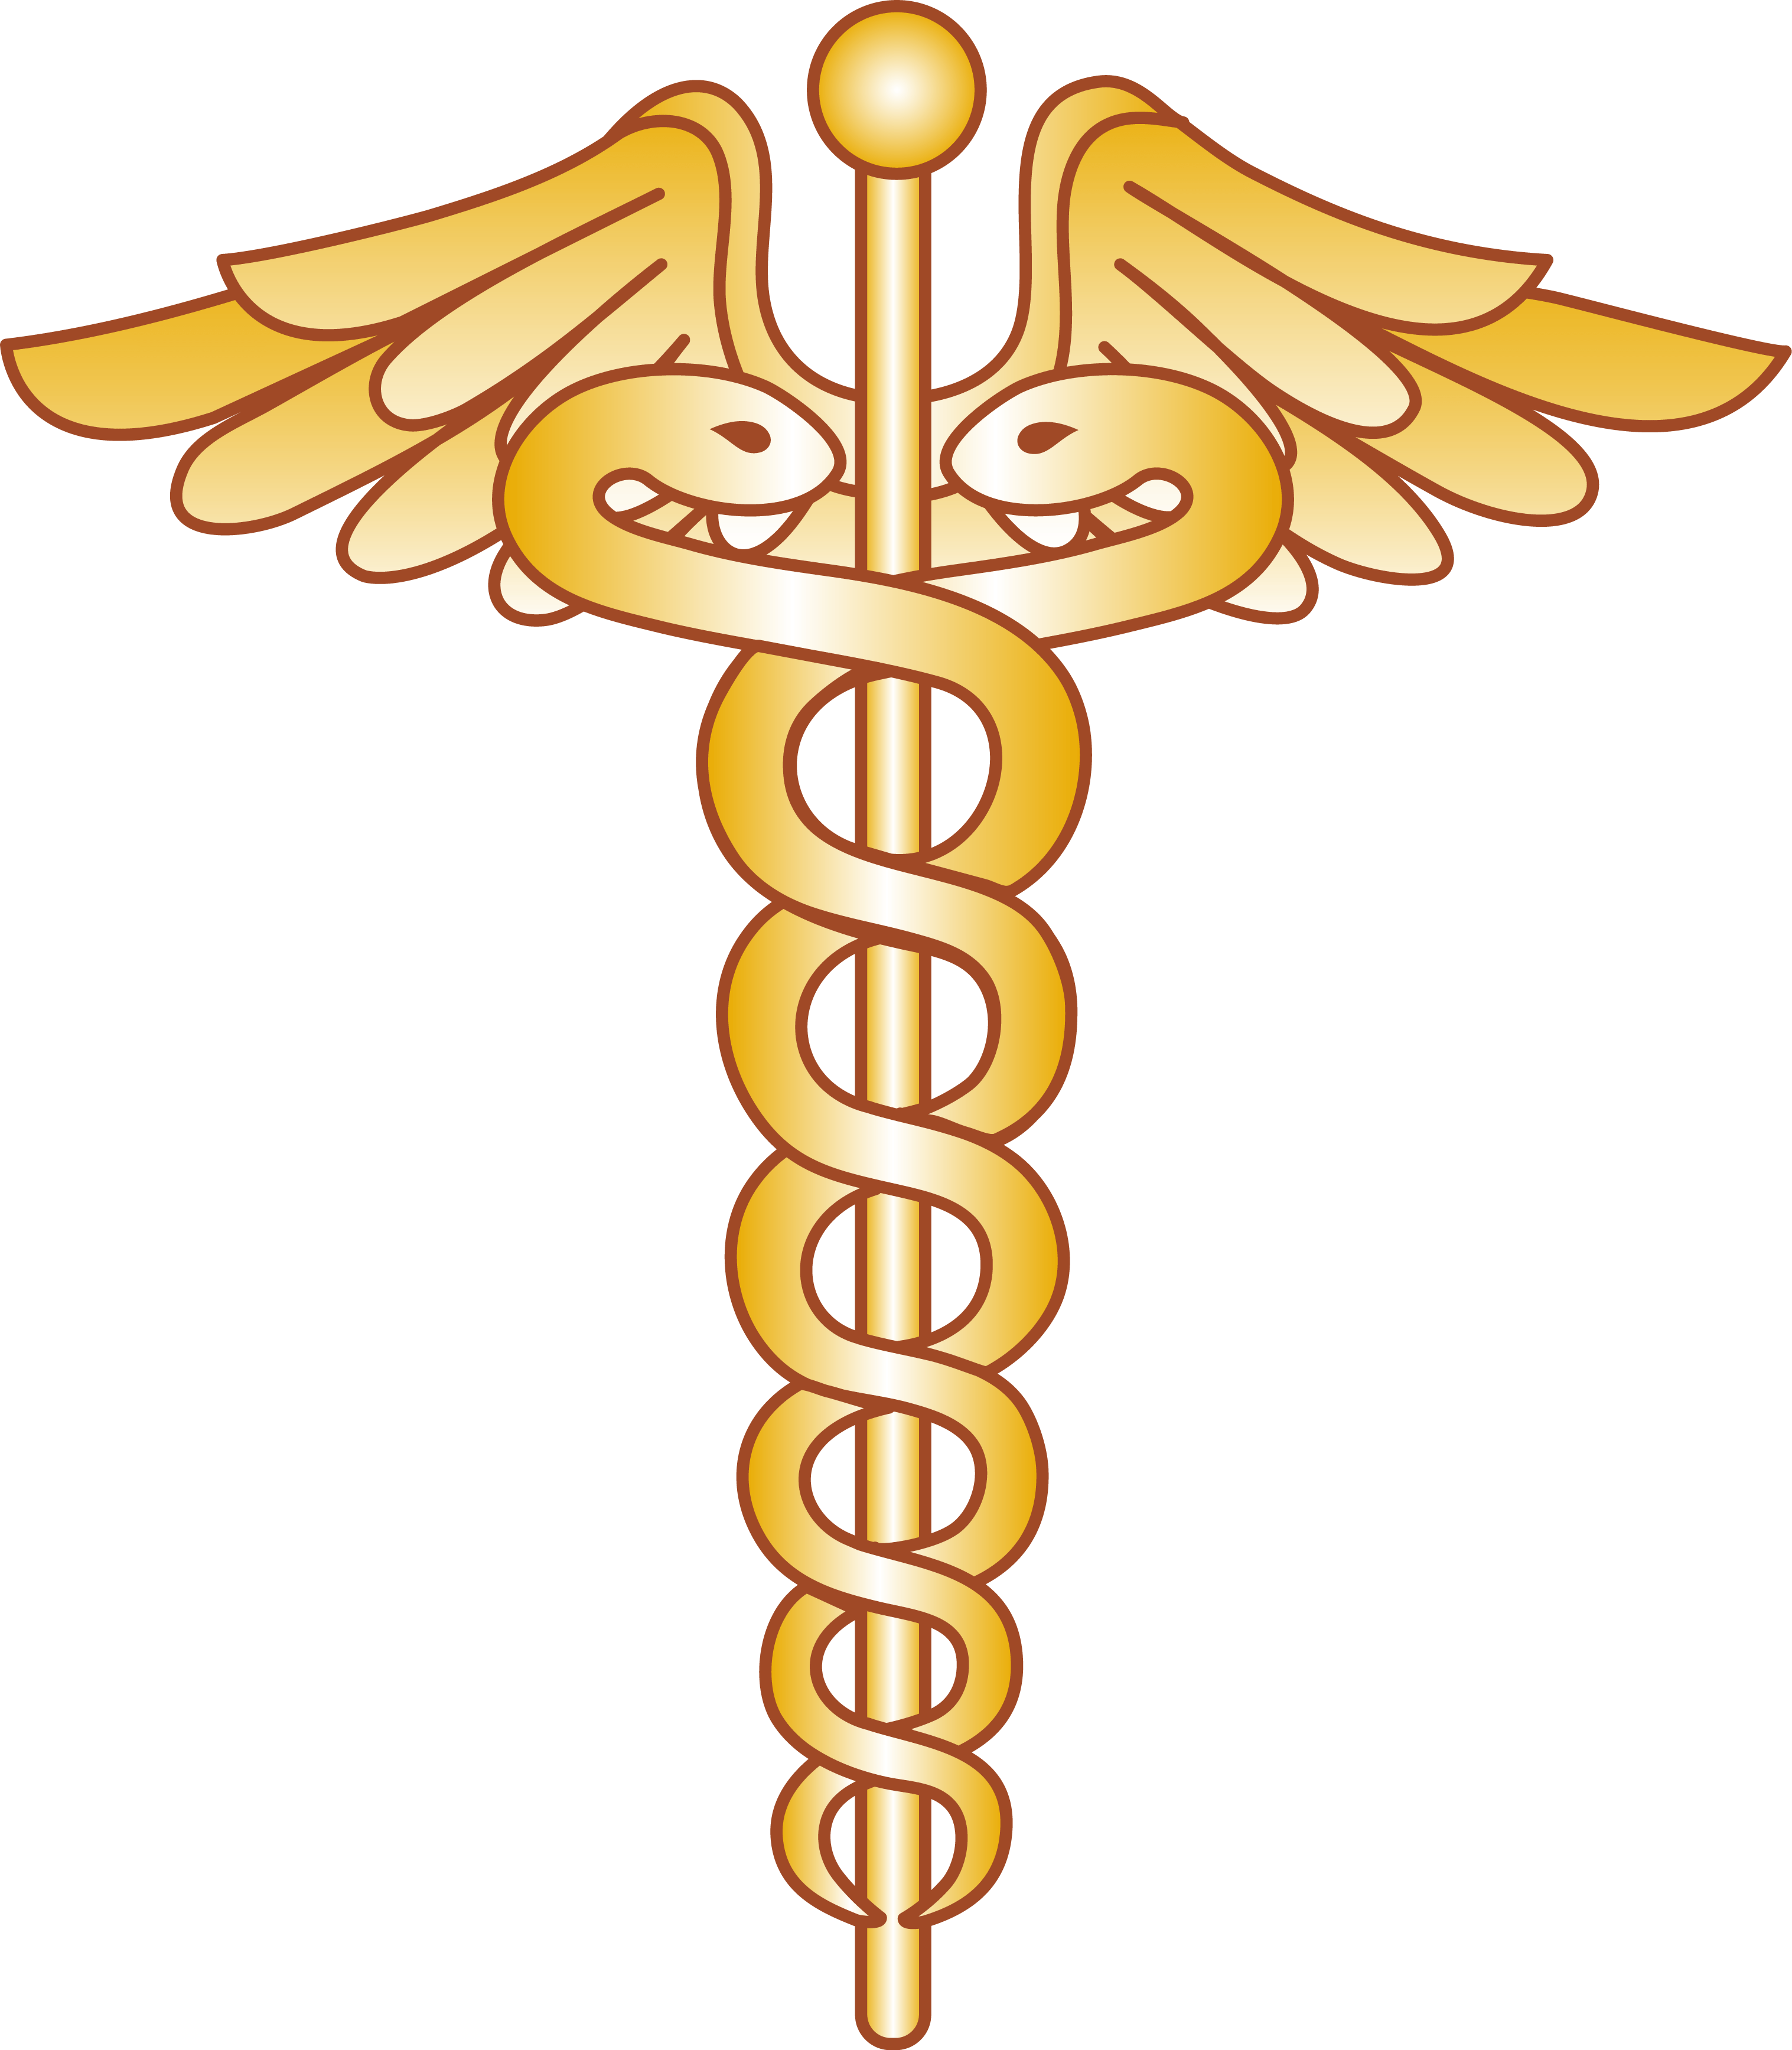 Medical Cross Snake Logo - Free Snake Health Clipart, Download Free Clip Art, Free Clip Art